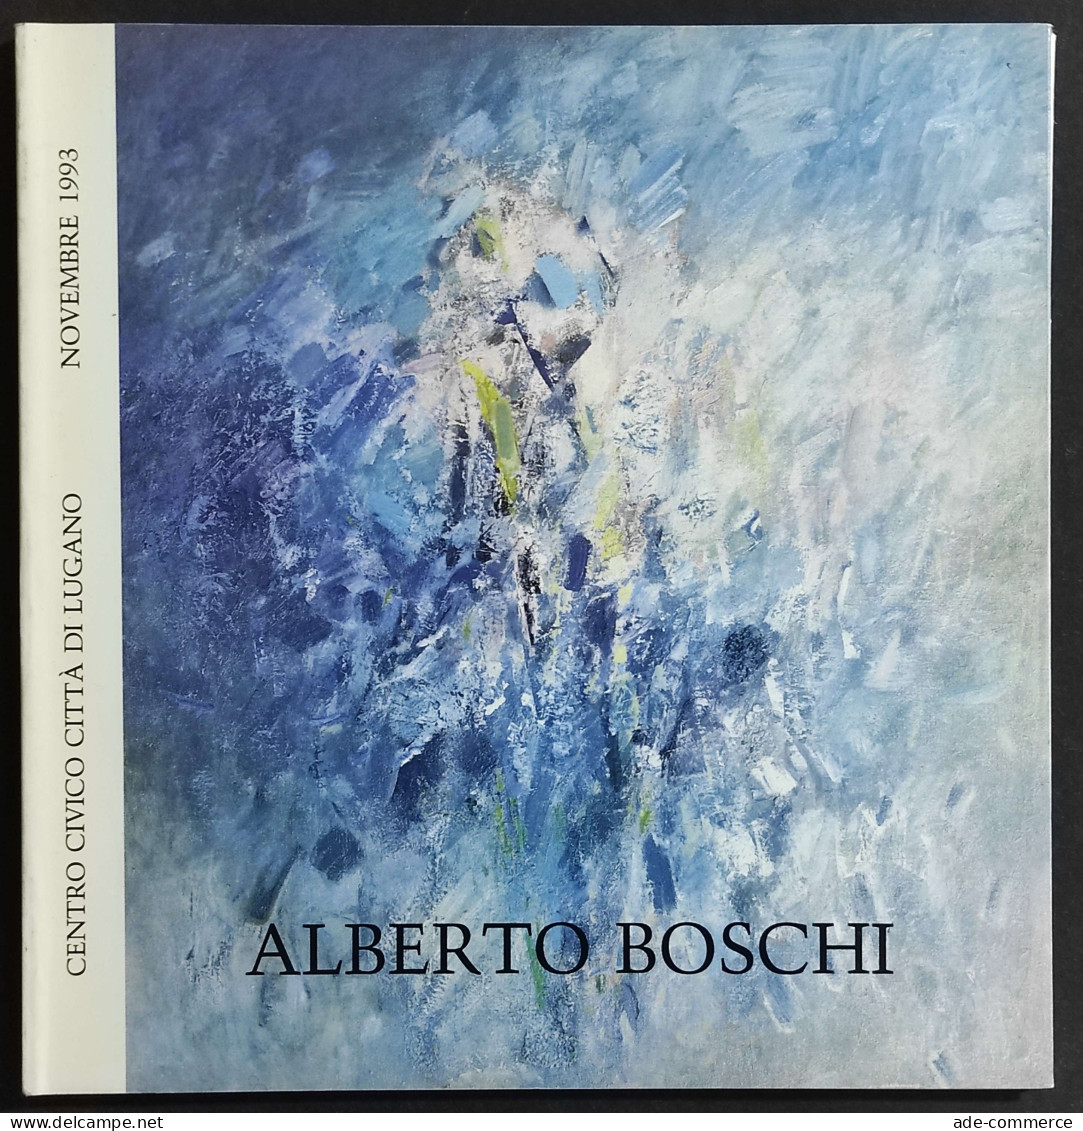 Alberto Boschi - Viaggio Nel Quadro - F. Sborgi - 1993 - Arts, Antiquity